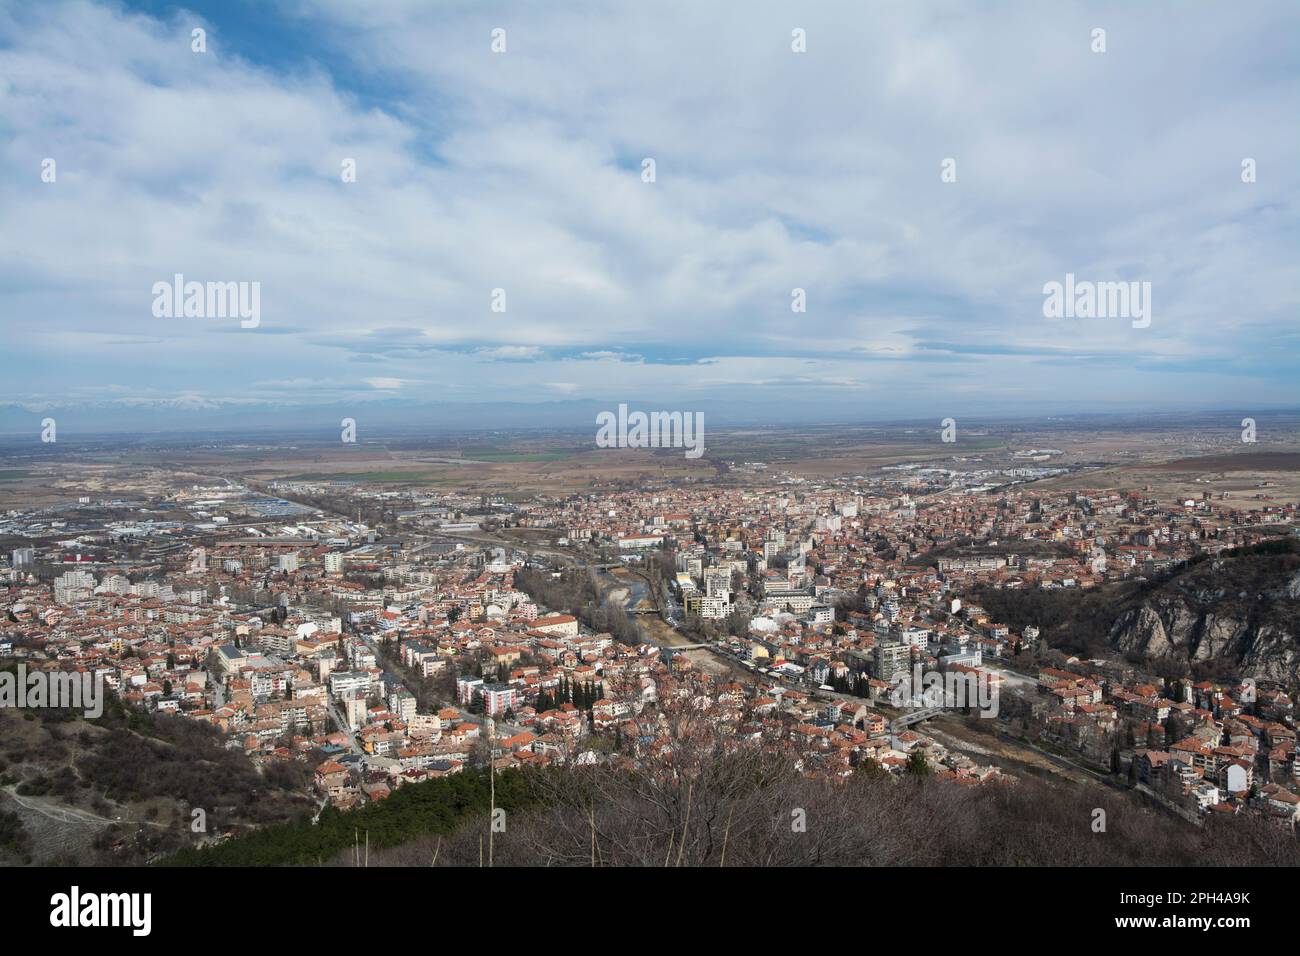 Una vista da St. Dimitar cappella alla città di Asenovgrad in Bulgaria. Immagine orizzontale con spazio di copia Foto Stock